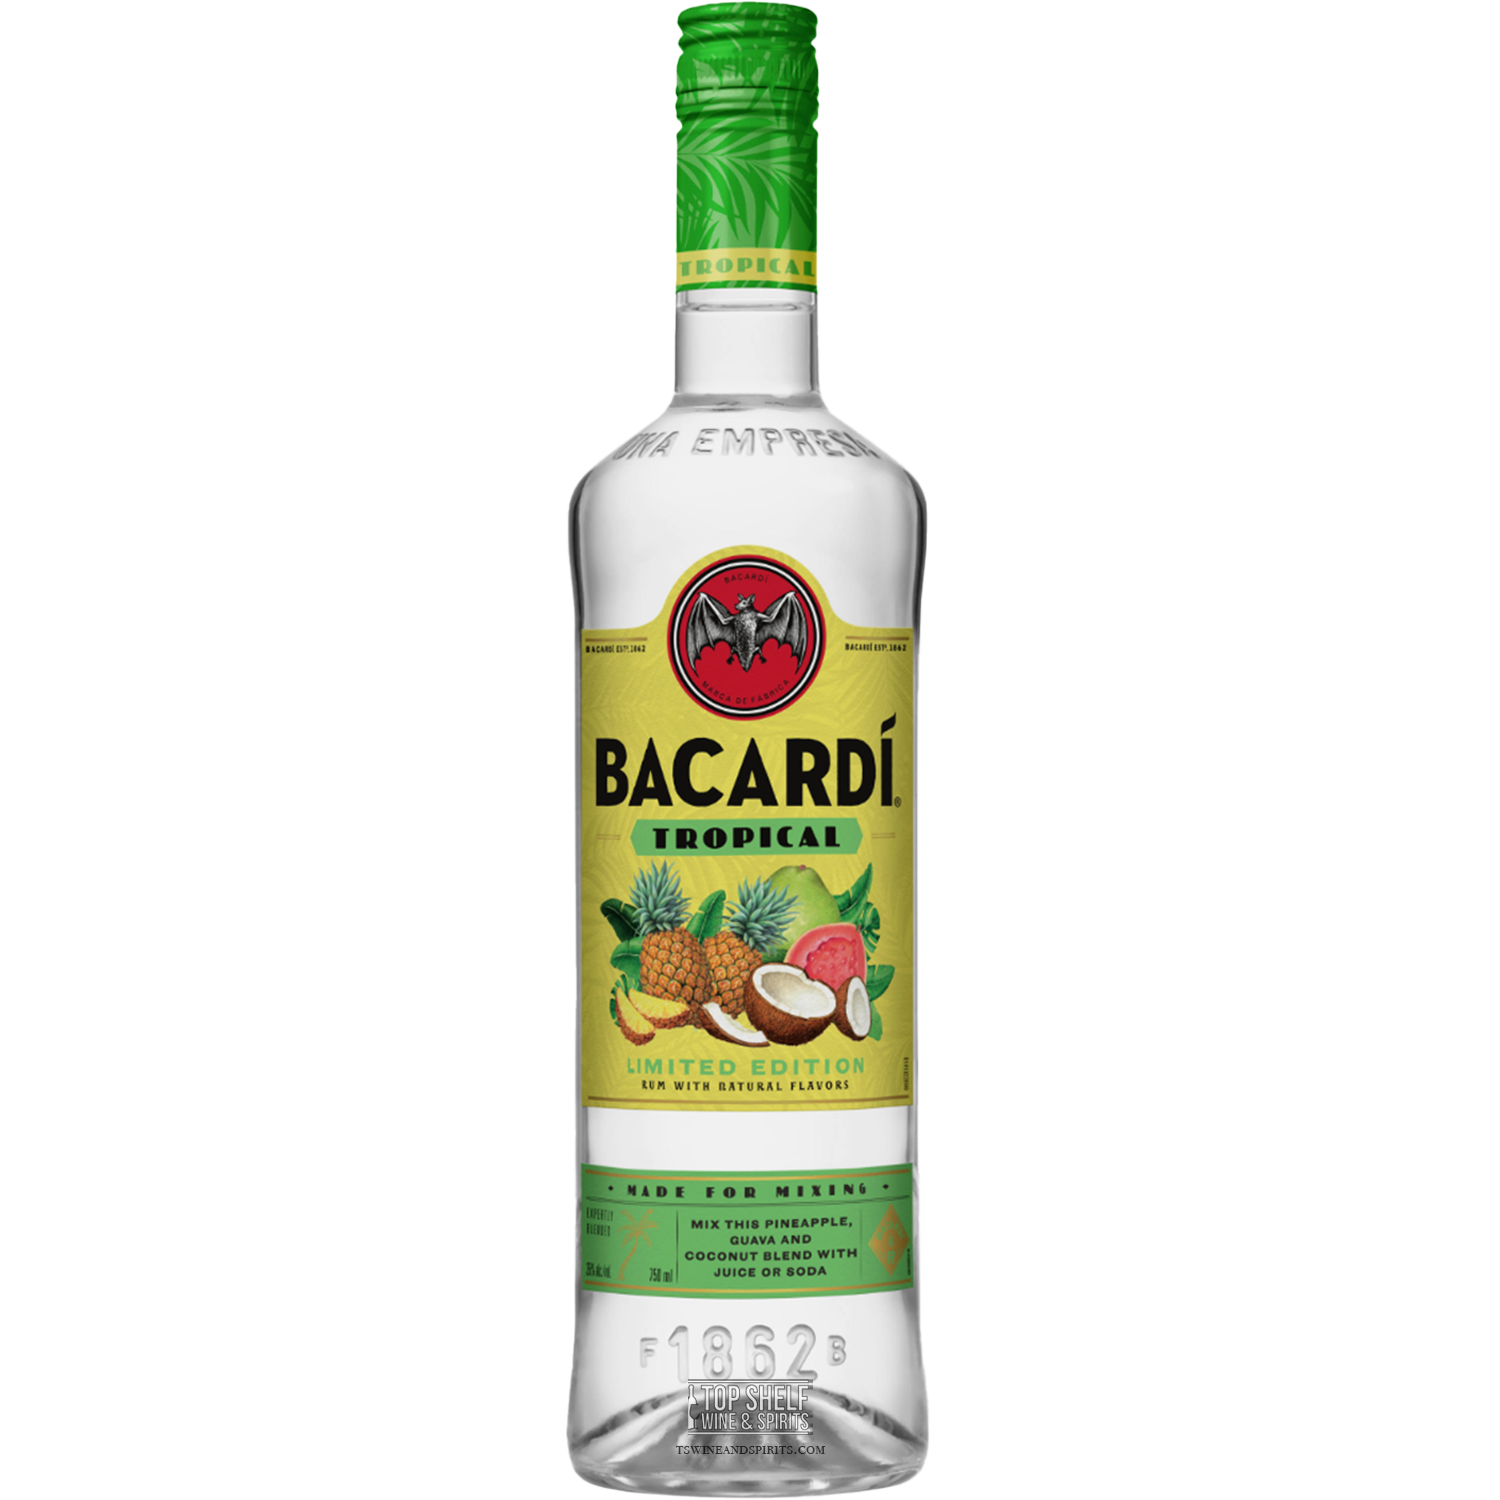 Bacardí Tropical Rum